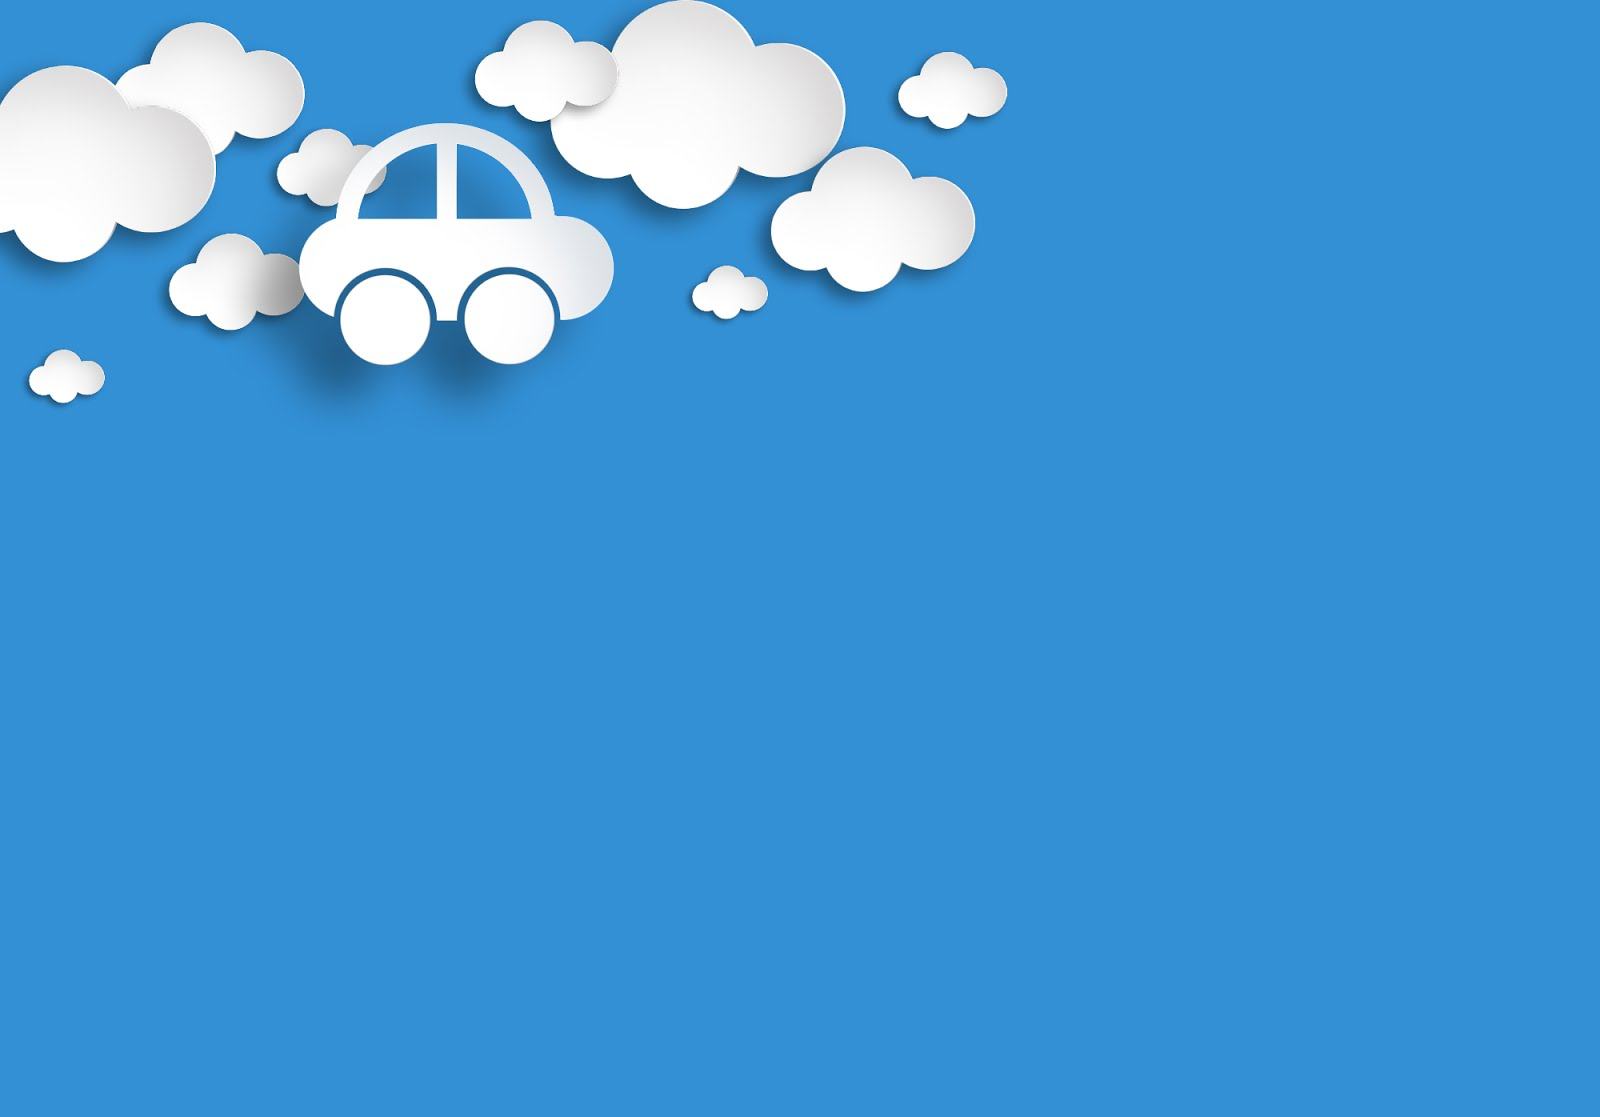 Hình nền cho PowerPoint taxi trên mây